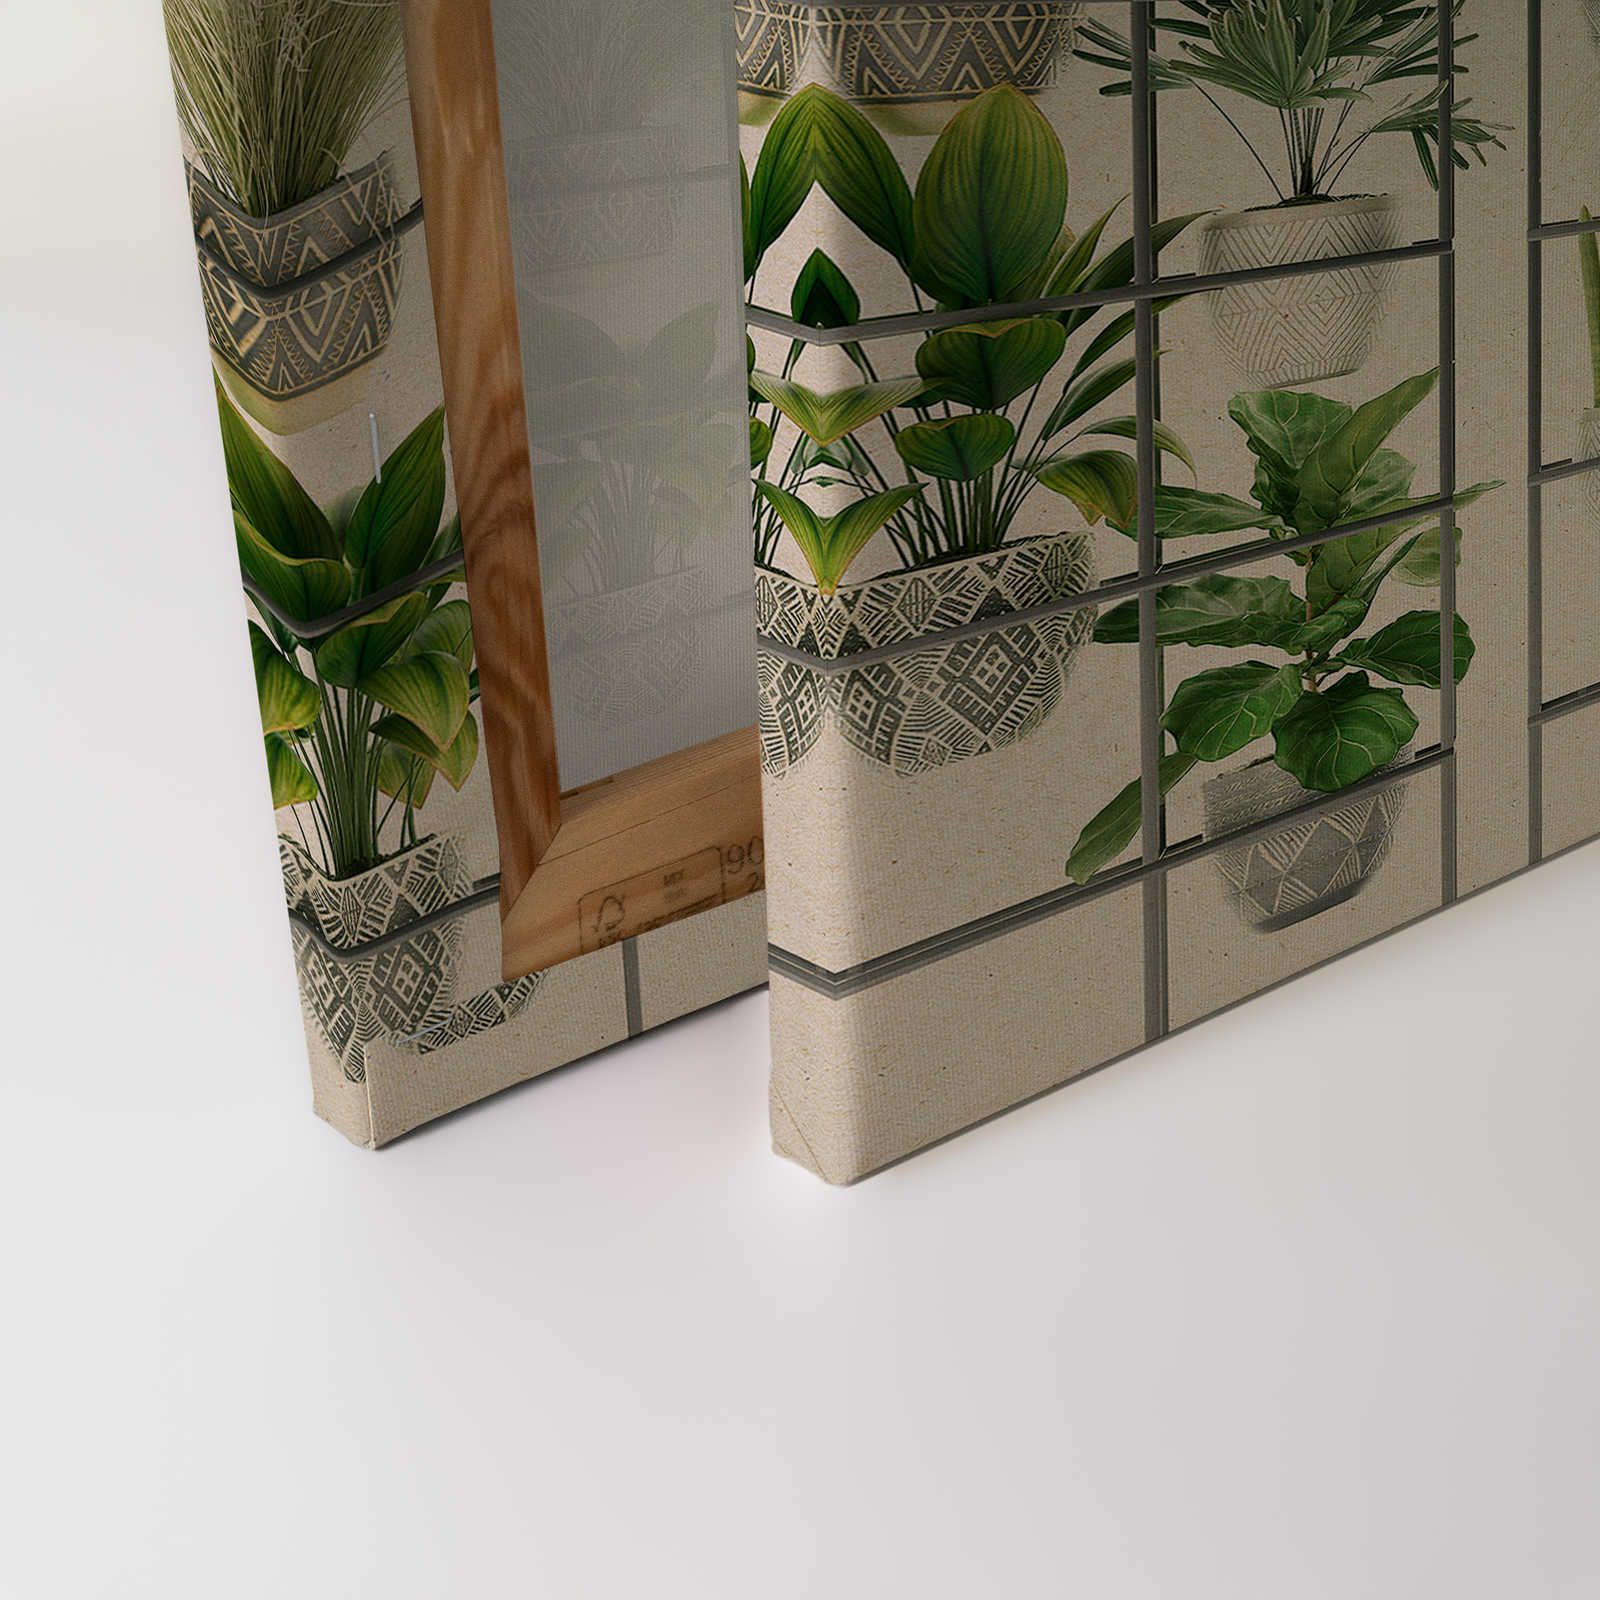             Plant Shop 2 - Tableau de plantes moderne sur toile vert & gris - 0,90 m x 0,60 m
        